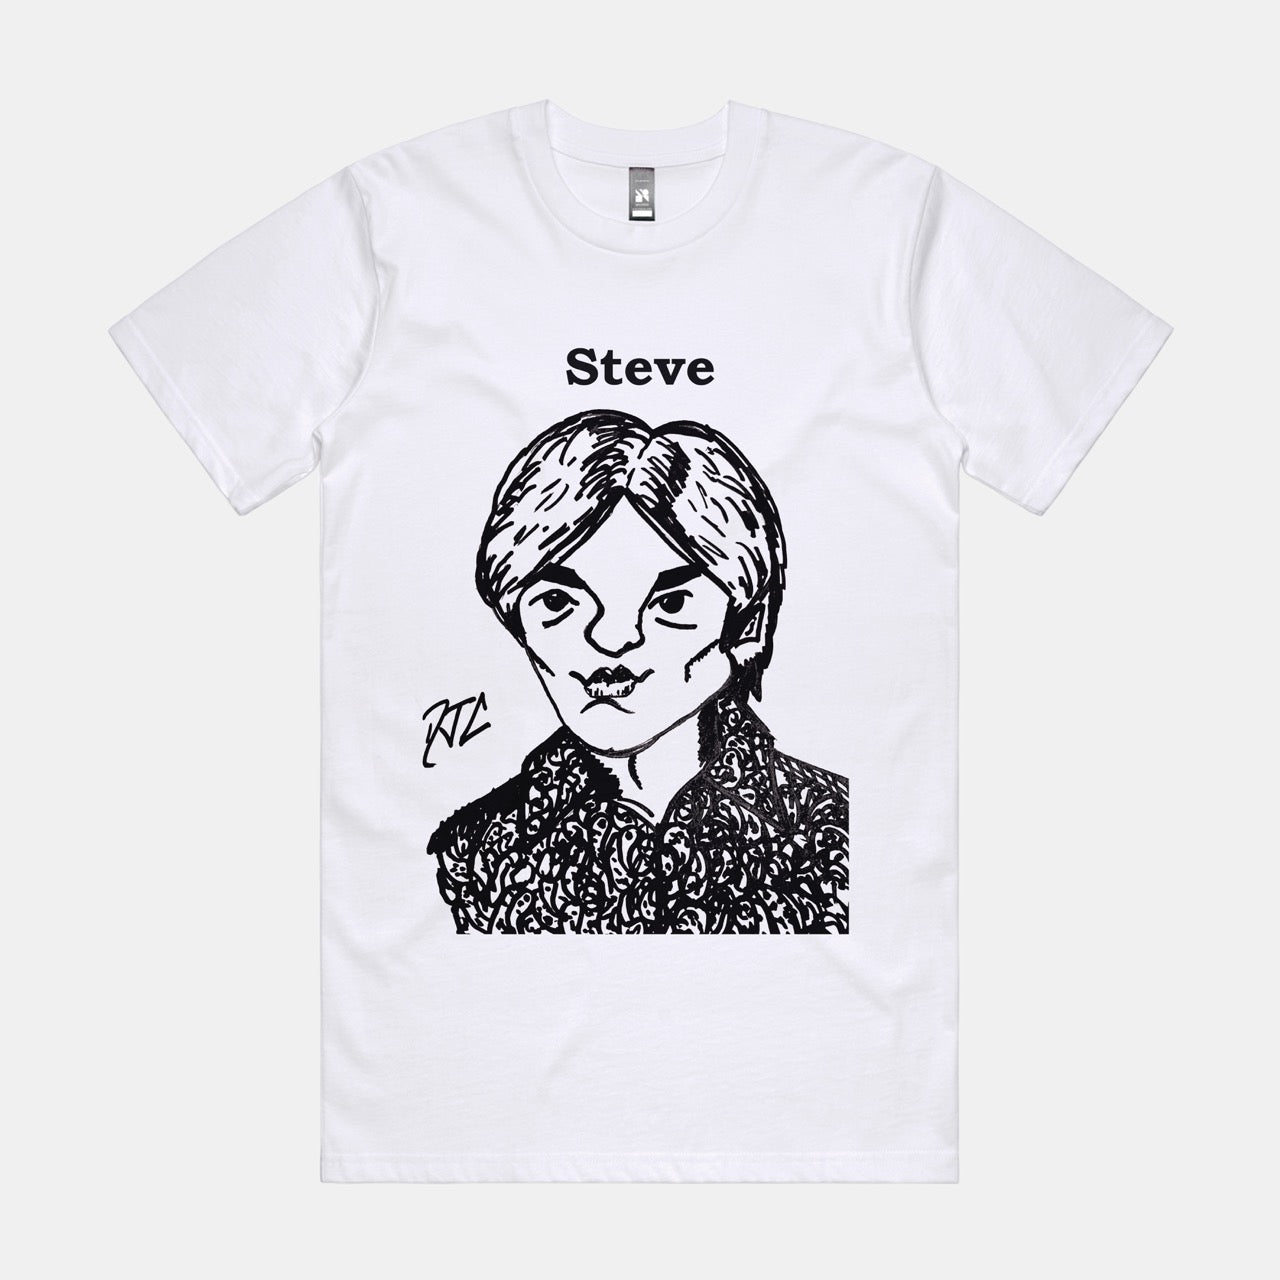 DJC - Steve Marriott Artwork - White T-shirt